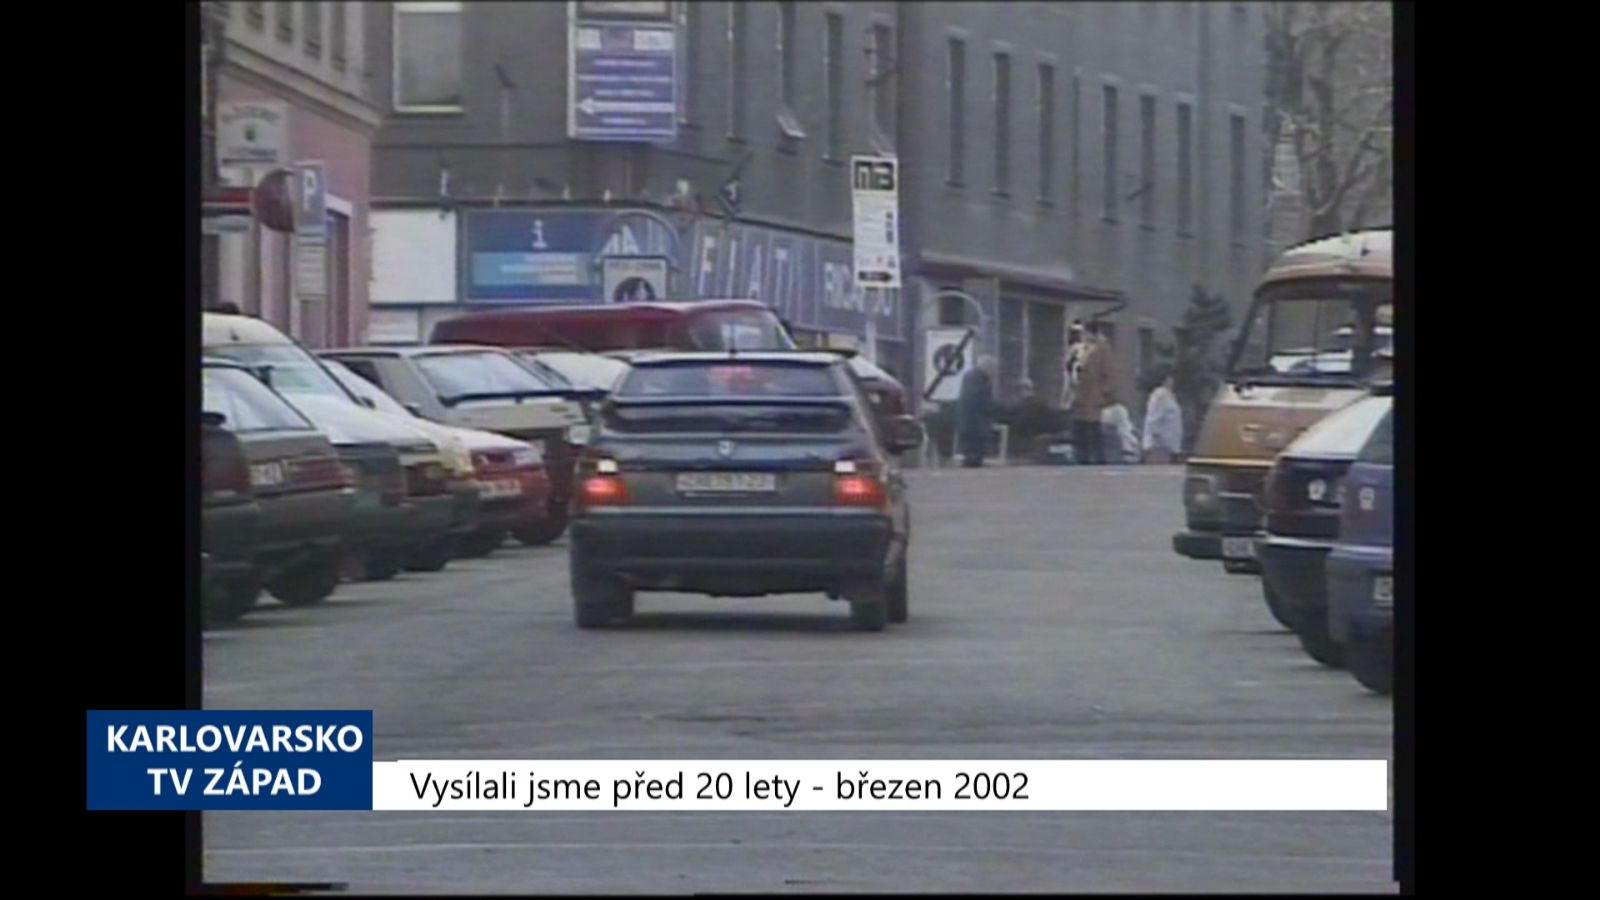 2002 – Cheb: V placených zónách budou moci parkovat i rezidenti (TV Západ)